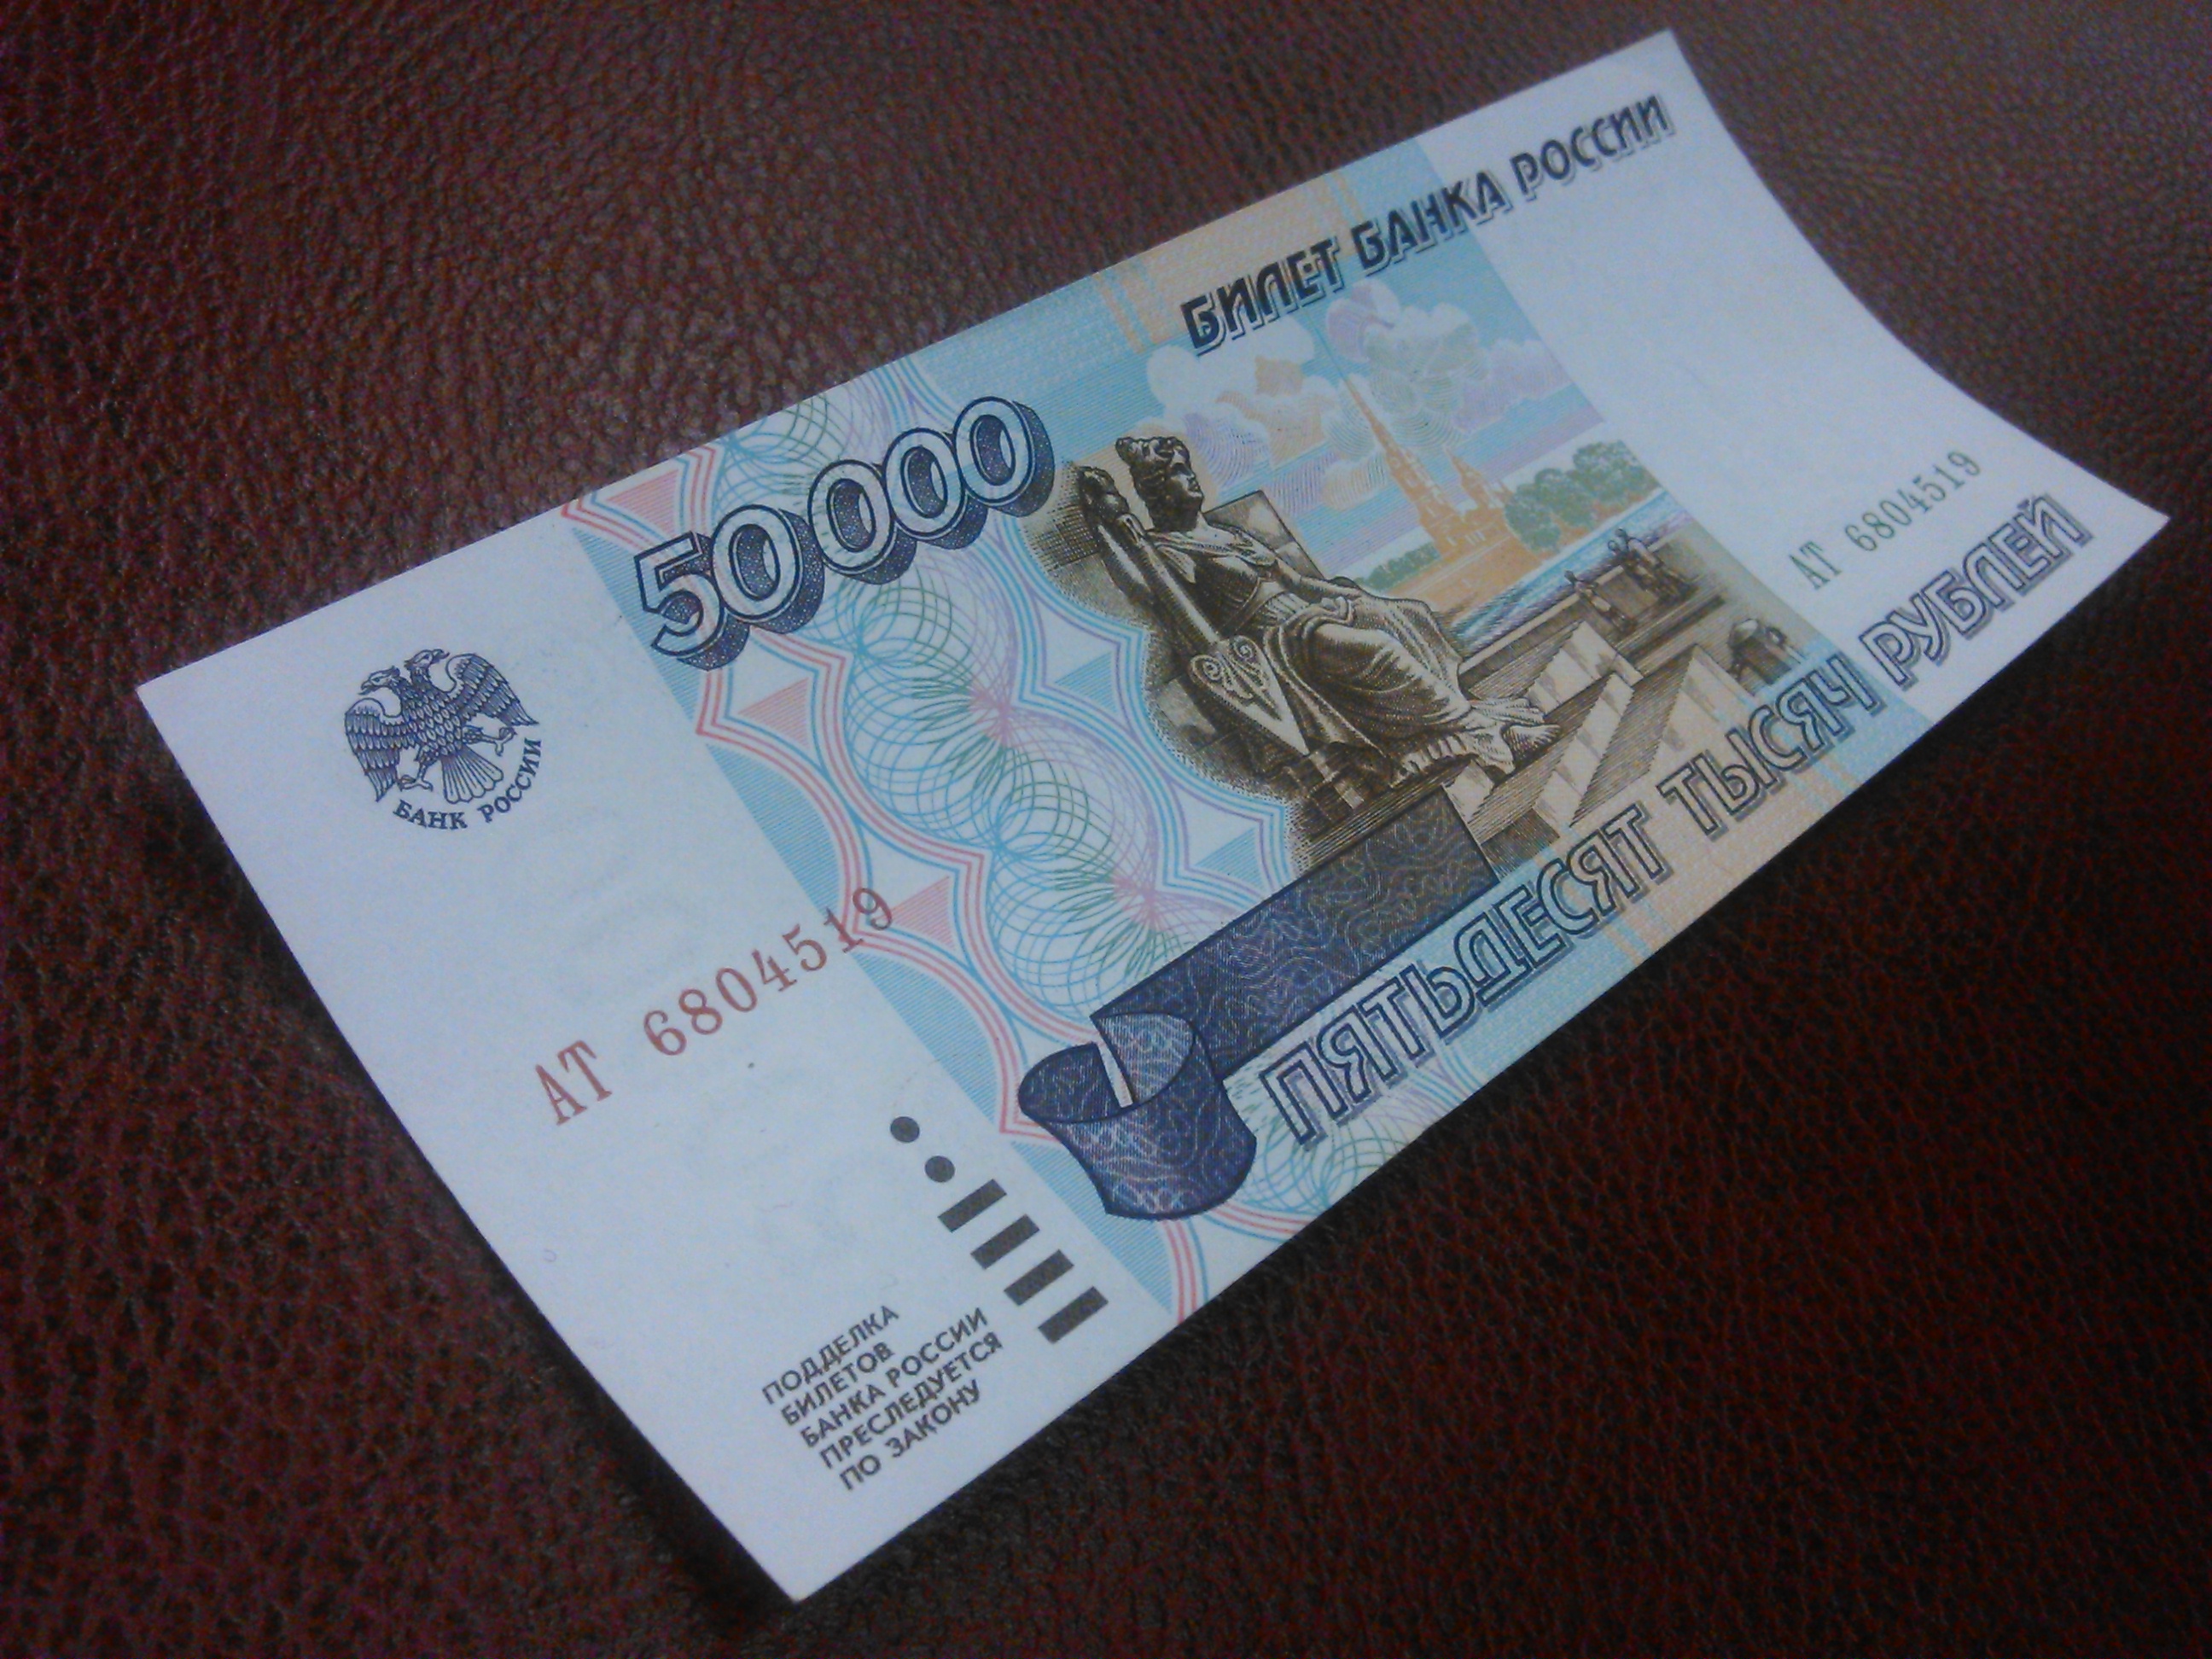 20 от 1000 рублей. 200 Рублей банкнота. Банкнота 20000 рублей. 200 Рублей бумажные. Банкнота 50 рублей.